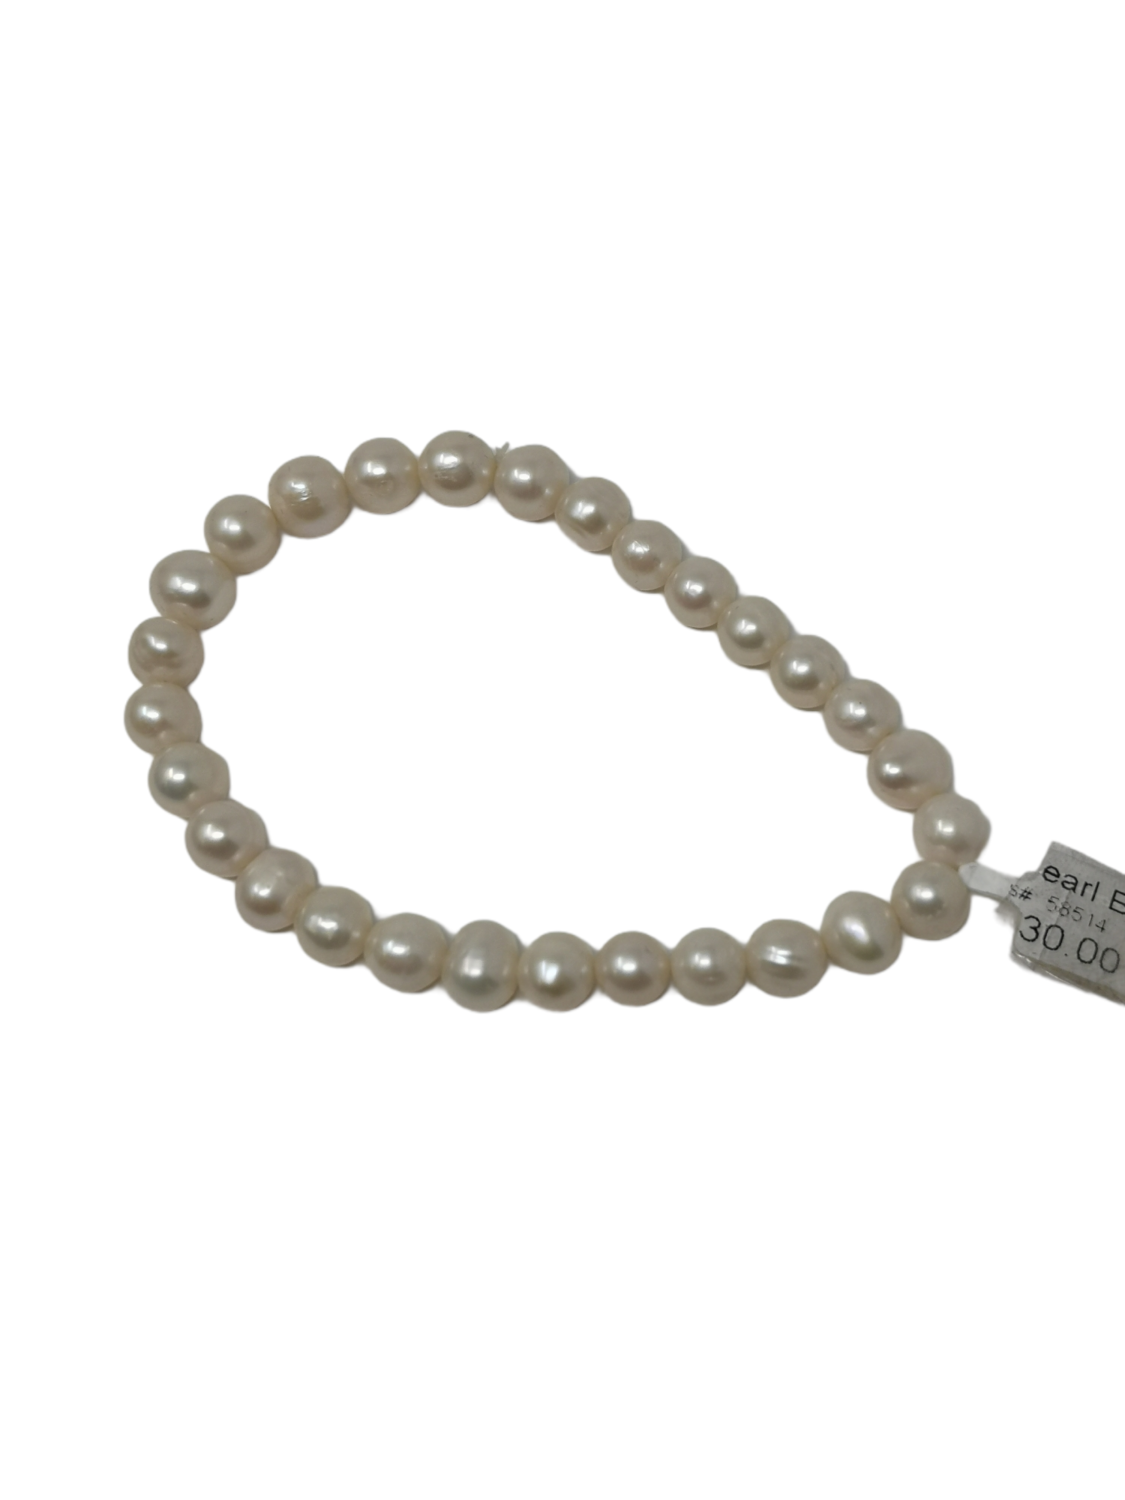 Bracelet White Pearls